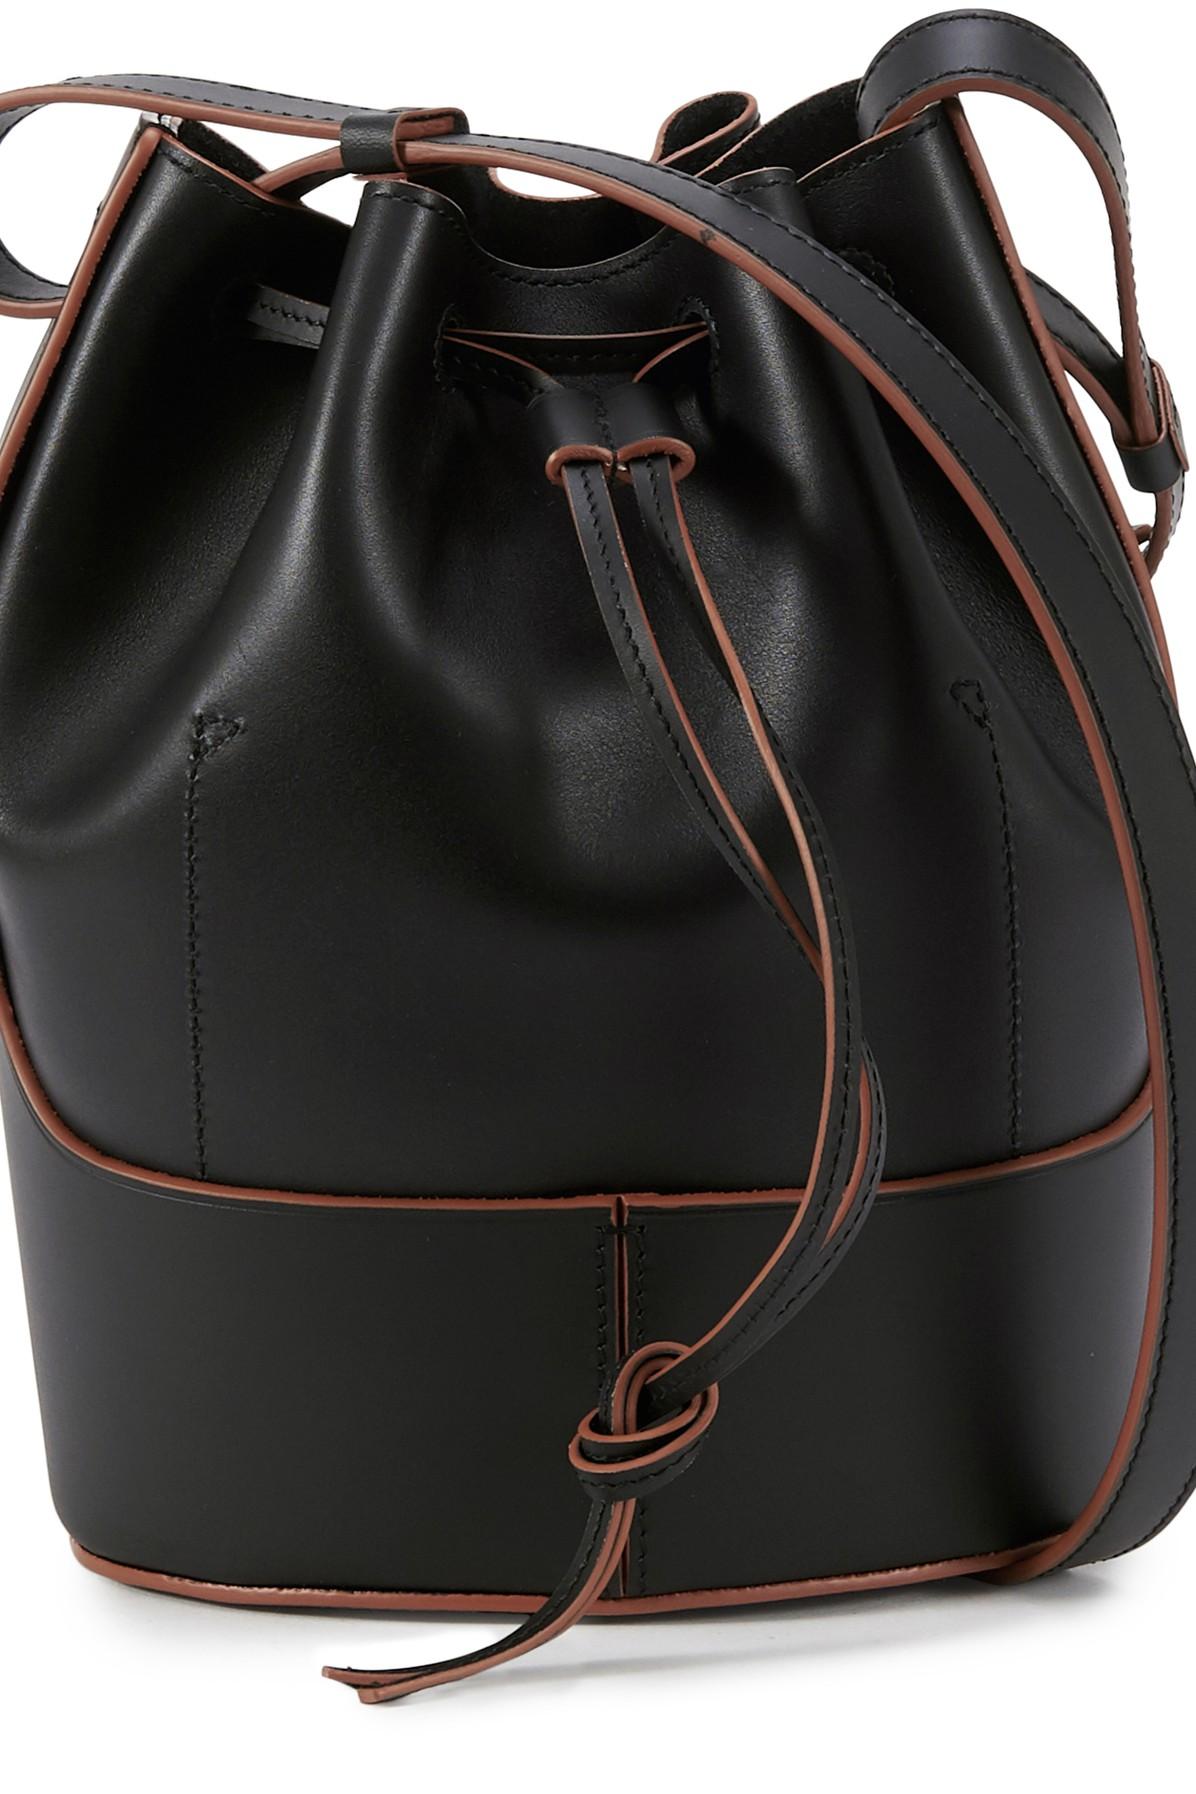 Loewe Balloon Bucket Bag Leather Small Black 2119661